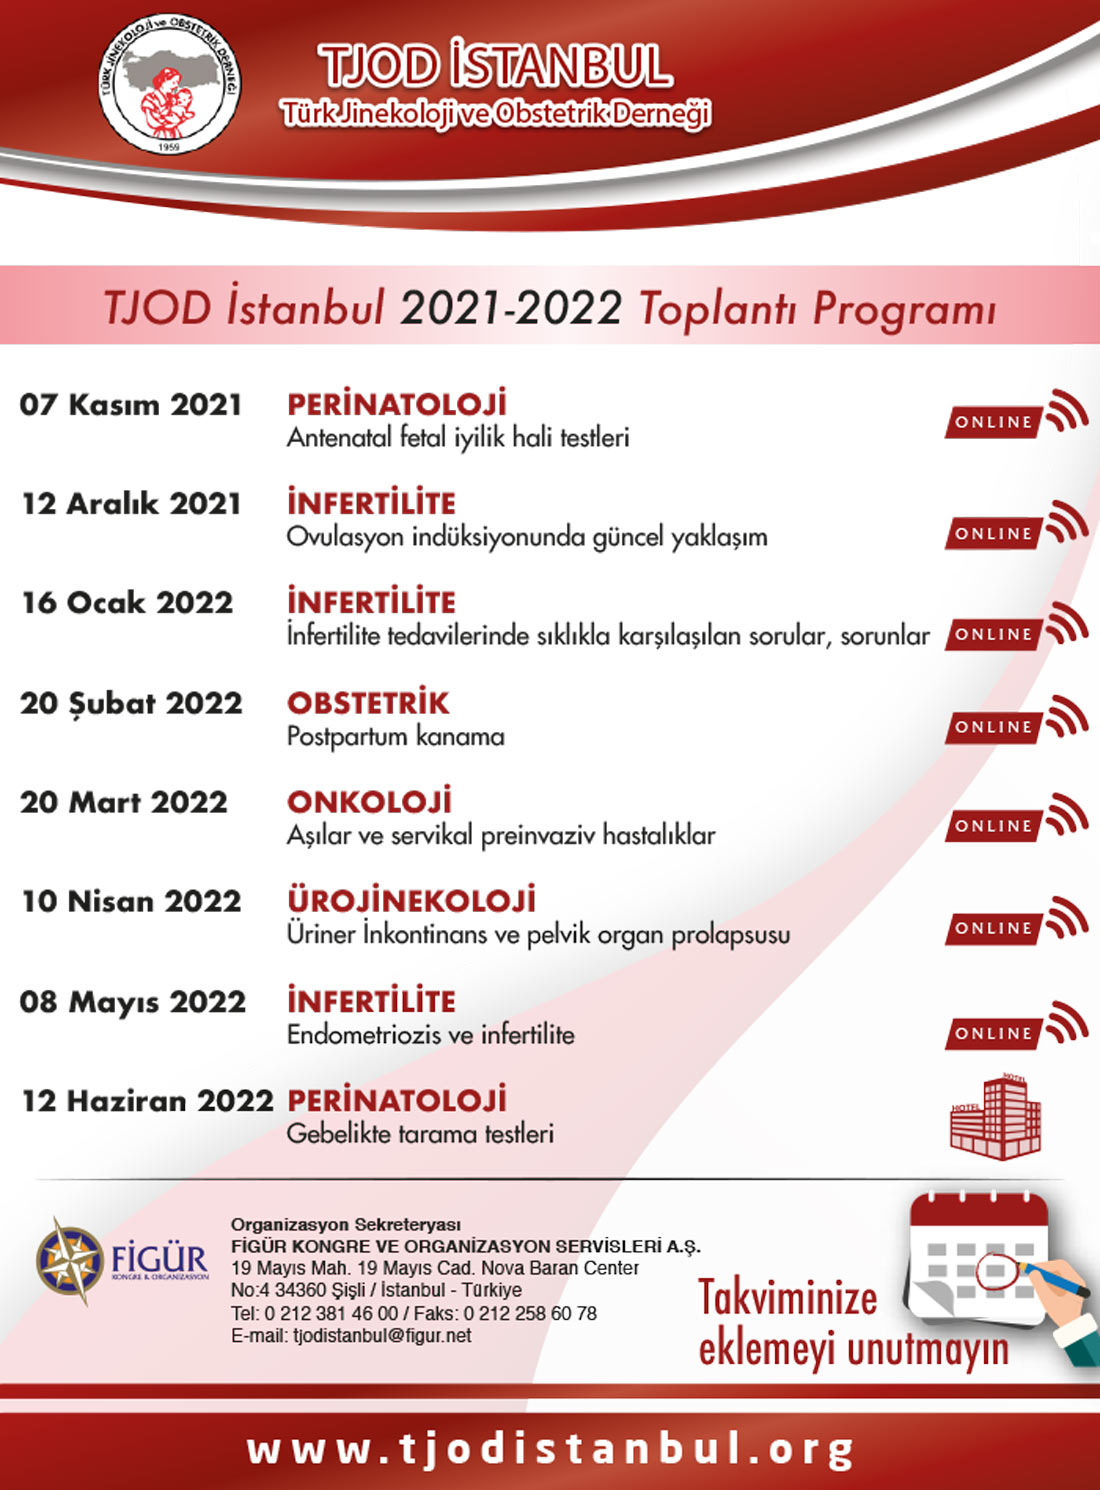 tjod istanbul toplanti programi 21 22